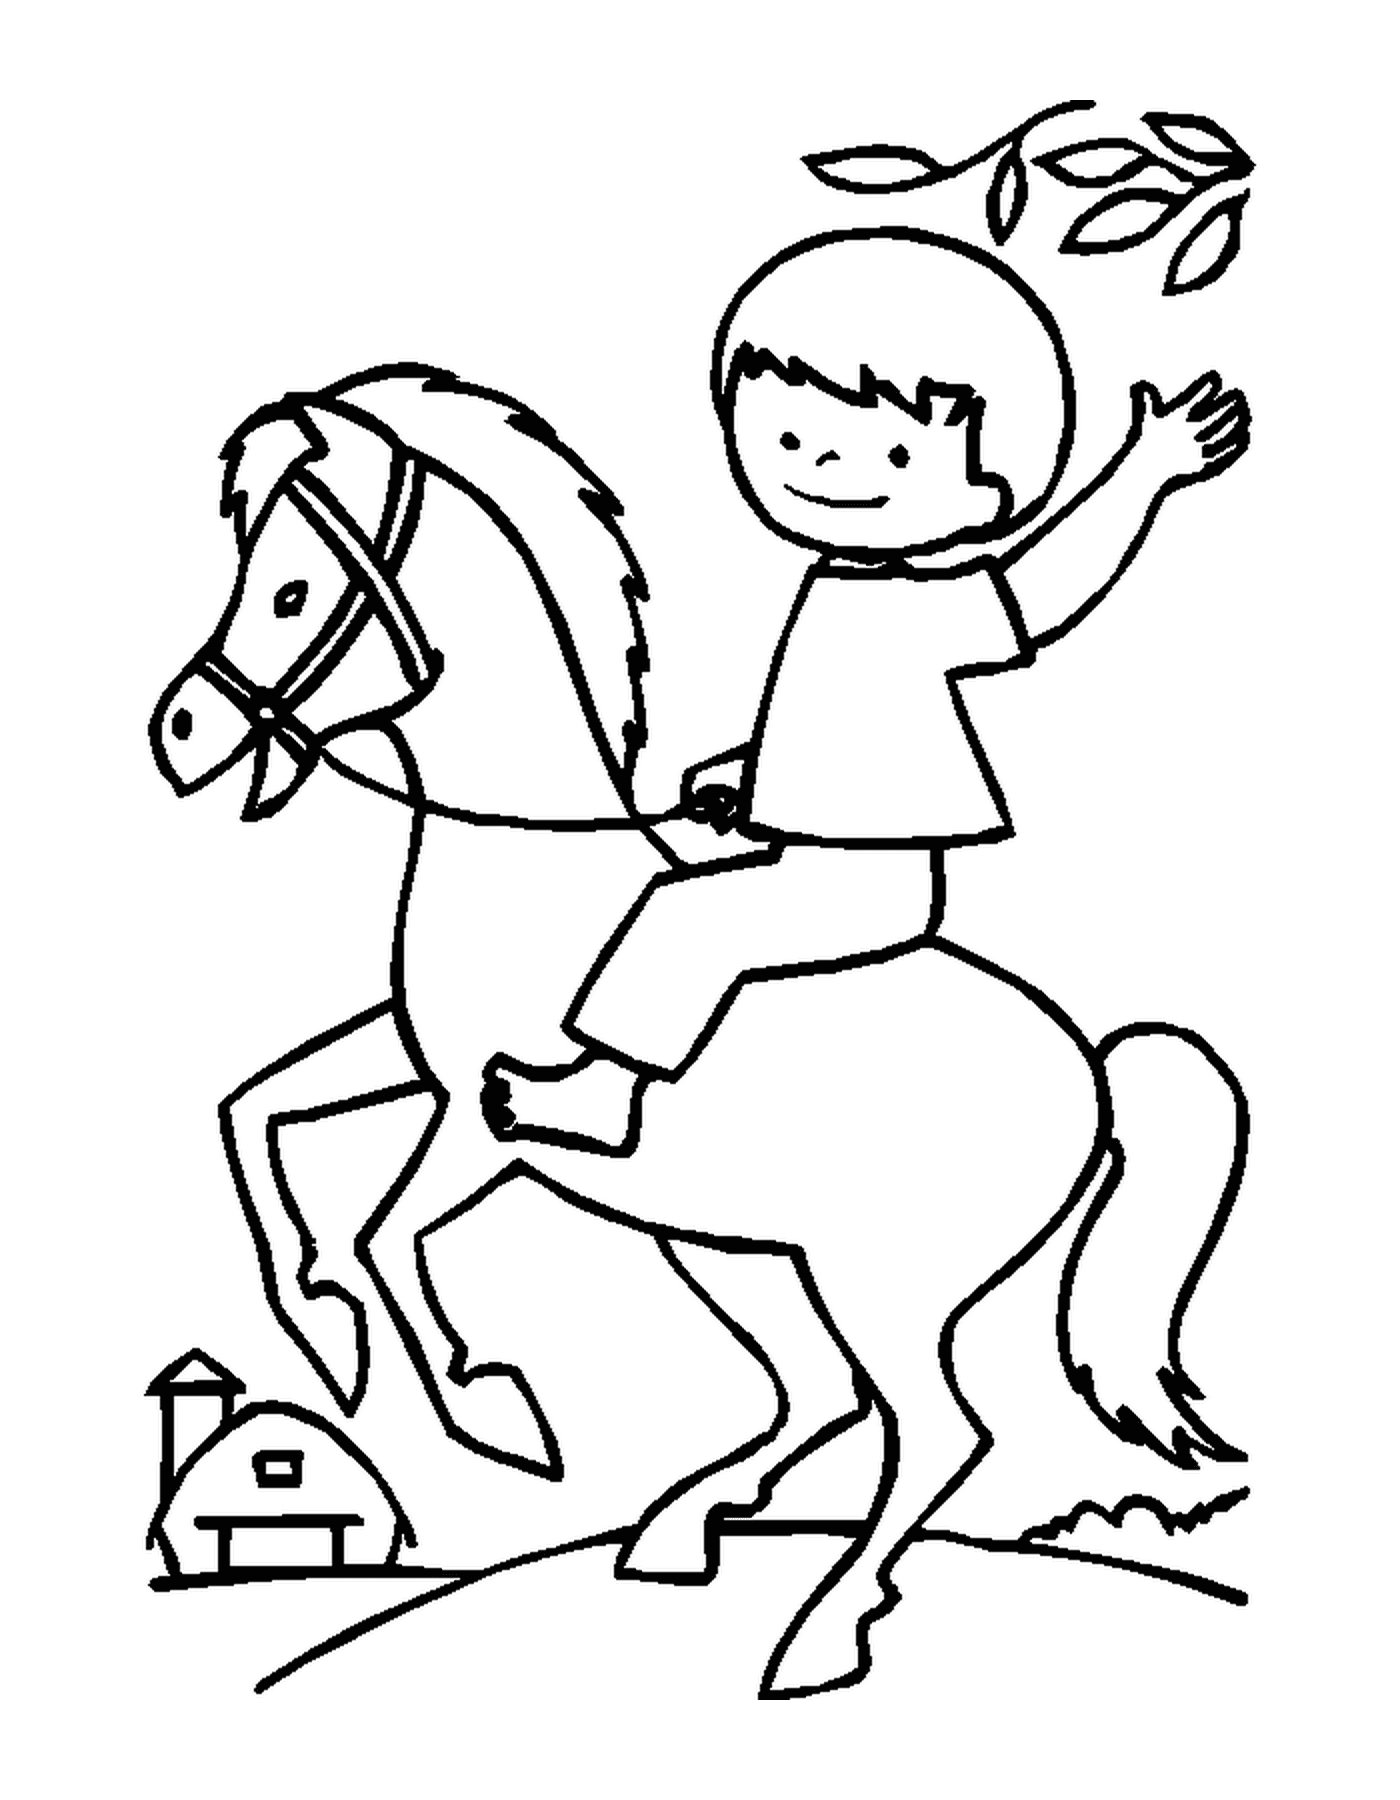  Niño montando su caballo felizmente sosteniendo las riendas 